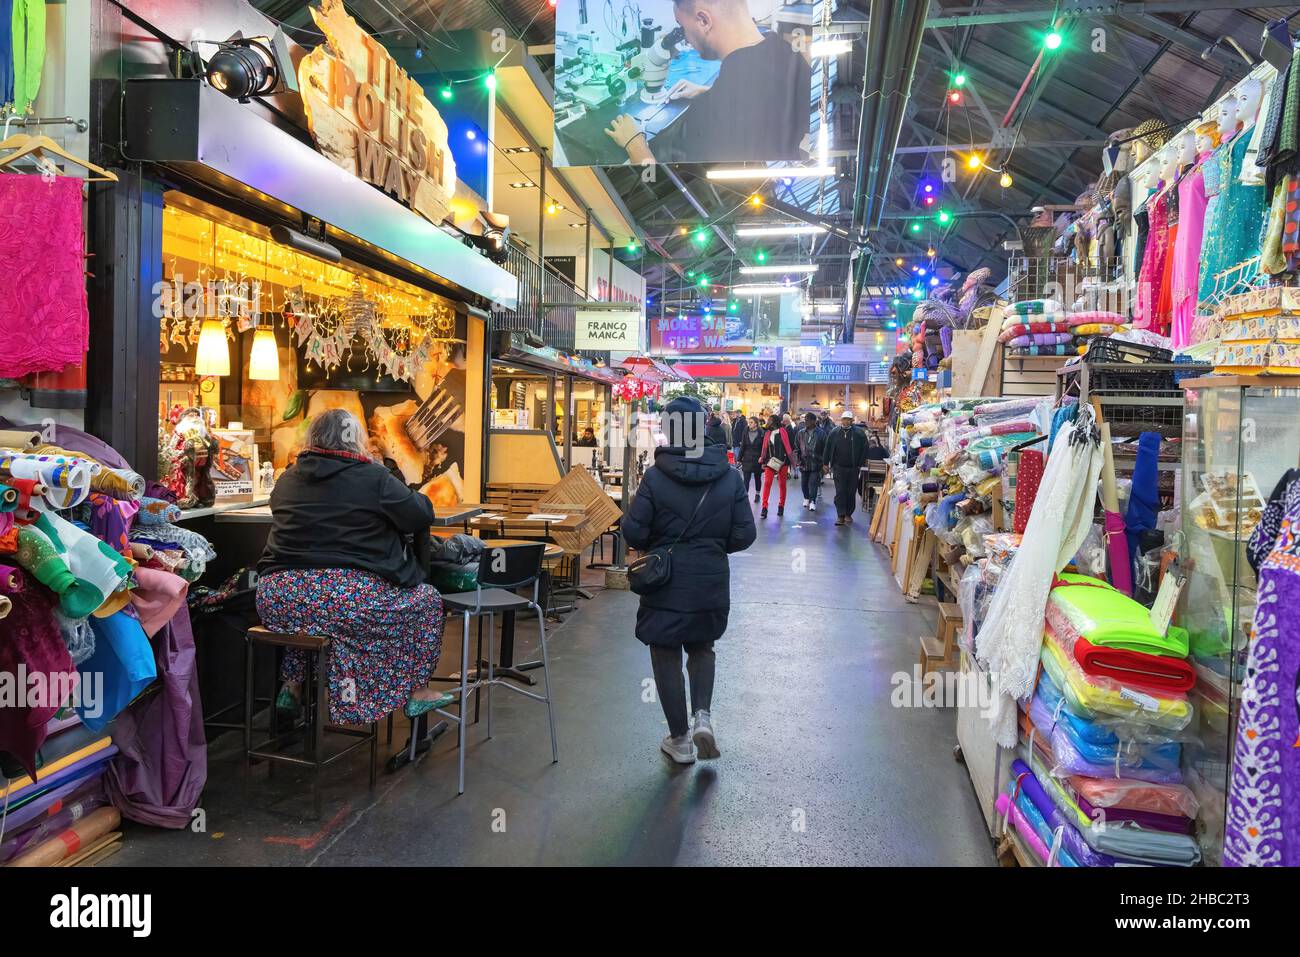 London Märkte; Tooting Markt - Menschen einkaufen in der Indoor-Markt in Tooting Bec, London SW17, London UK; Beispiel der Stadt Lebensstil, England Stockfoto